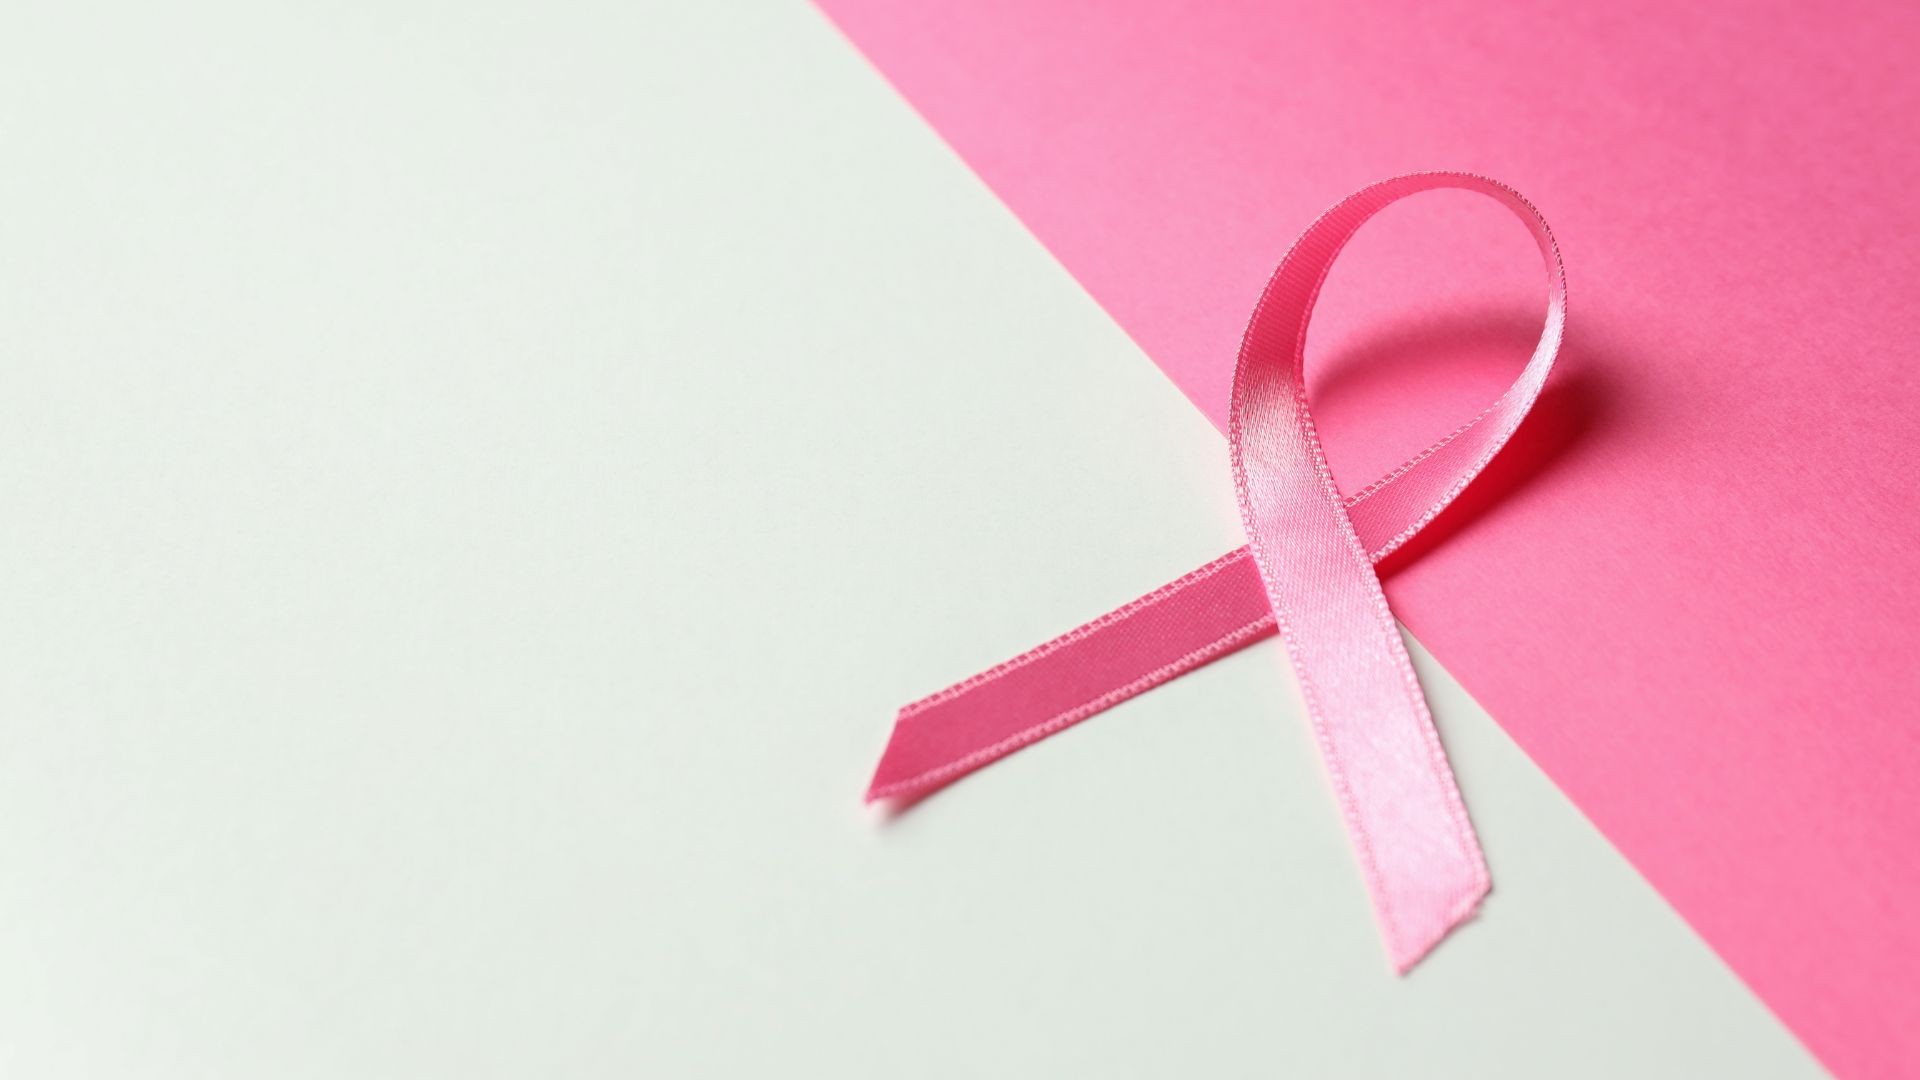 Παγκόσμια Ημέρα Πρόληψης κατά του Καρκίνου του Μαστού: Ο γονιδιακός έλεγχος σώζει ζωές